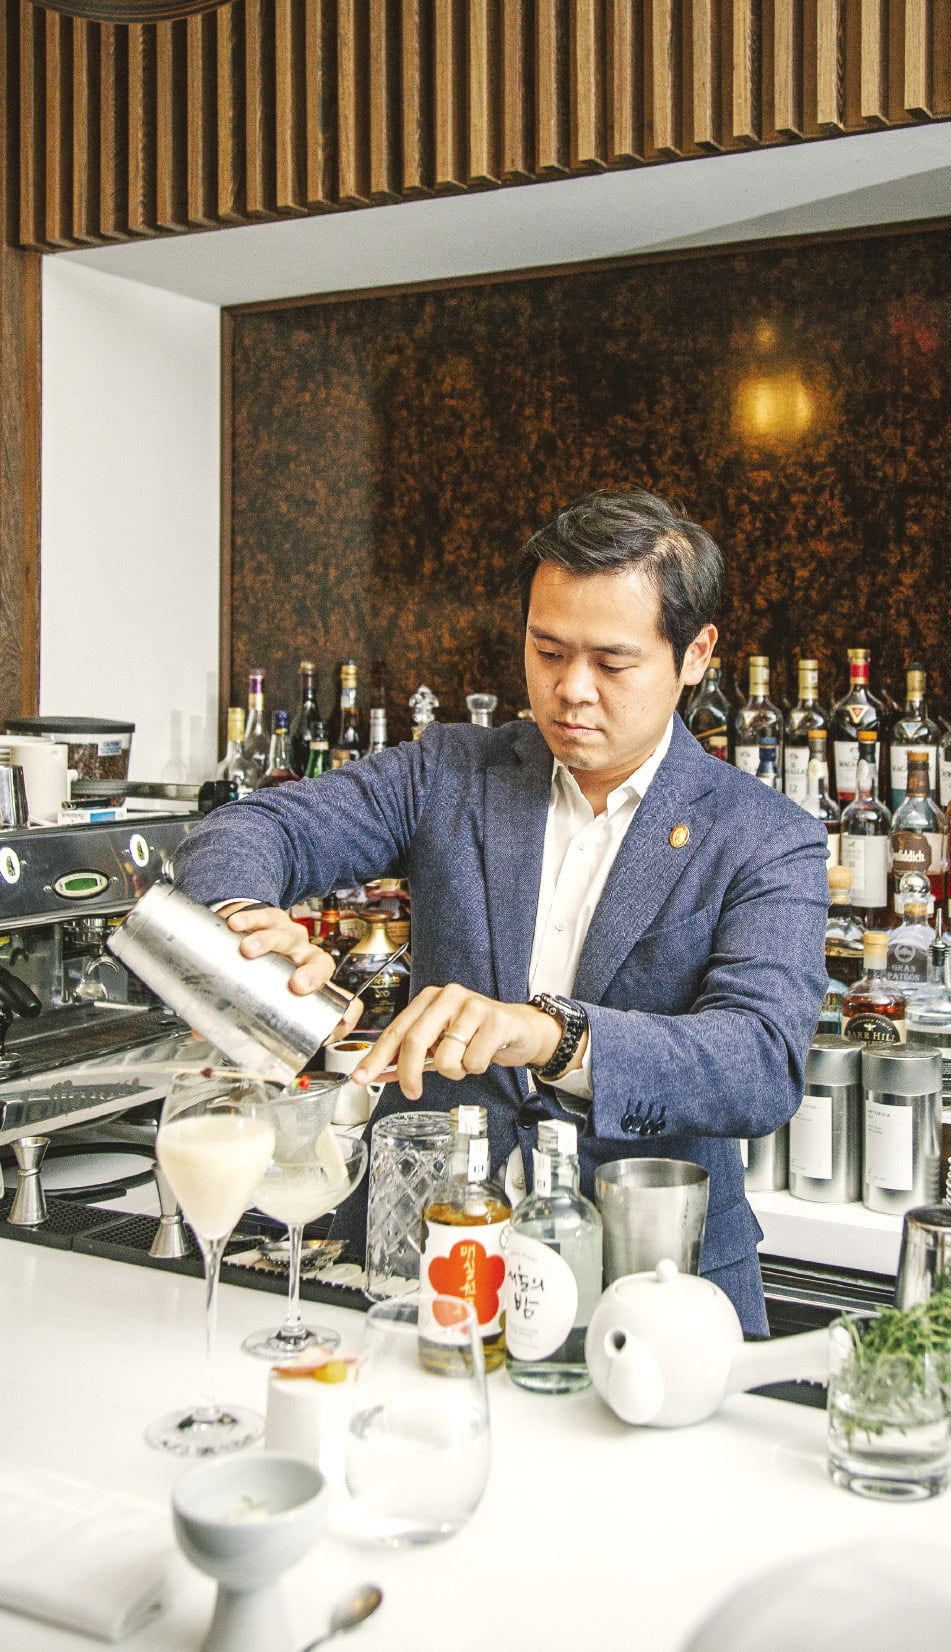 한국인 최초로 ‘마스터 소믈리에’ 자격증을 받은 김경문 씨가 뉴욕의 한 레스토랑에서 전통주로 칵테일을 만들고 있다.   정소람 특파원 